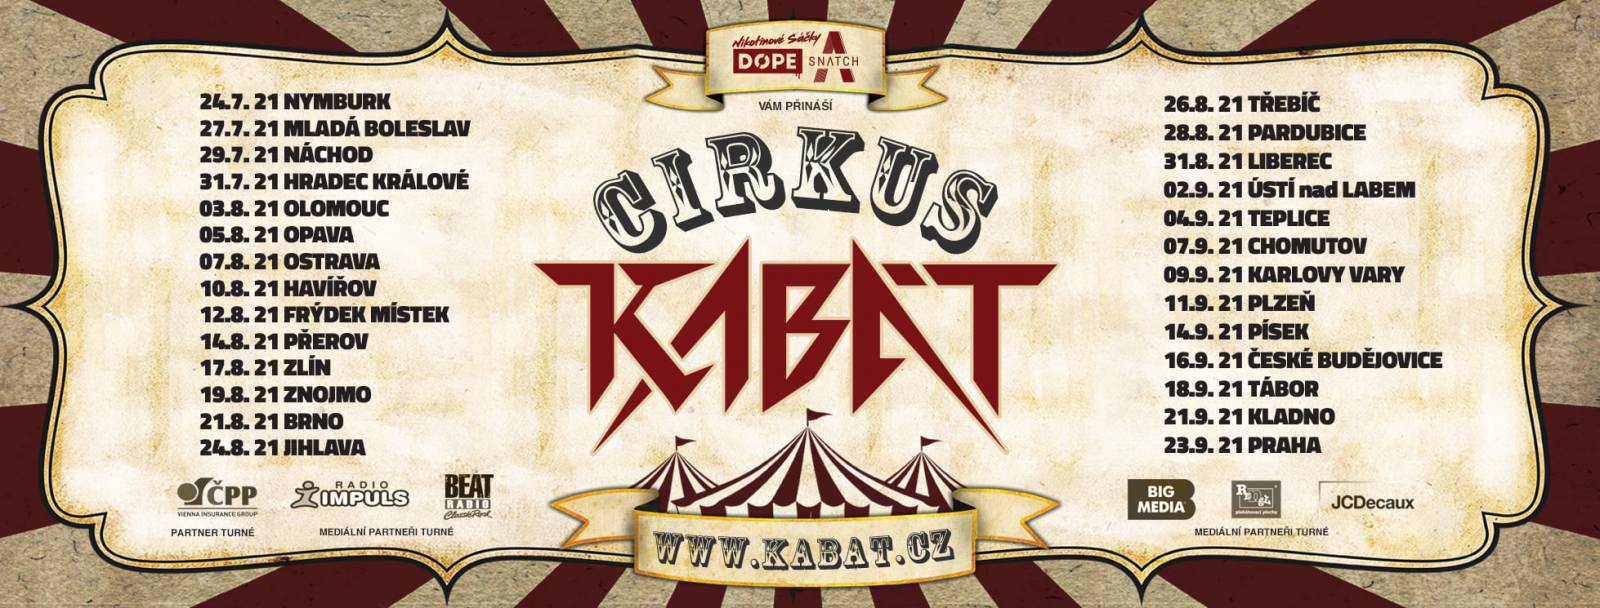 Kabát vyráží na turné Cirkus Kabát, původní šňůru opět překládá